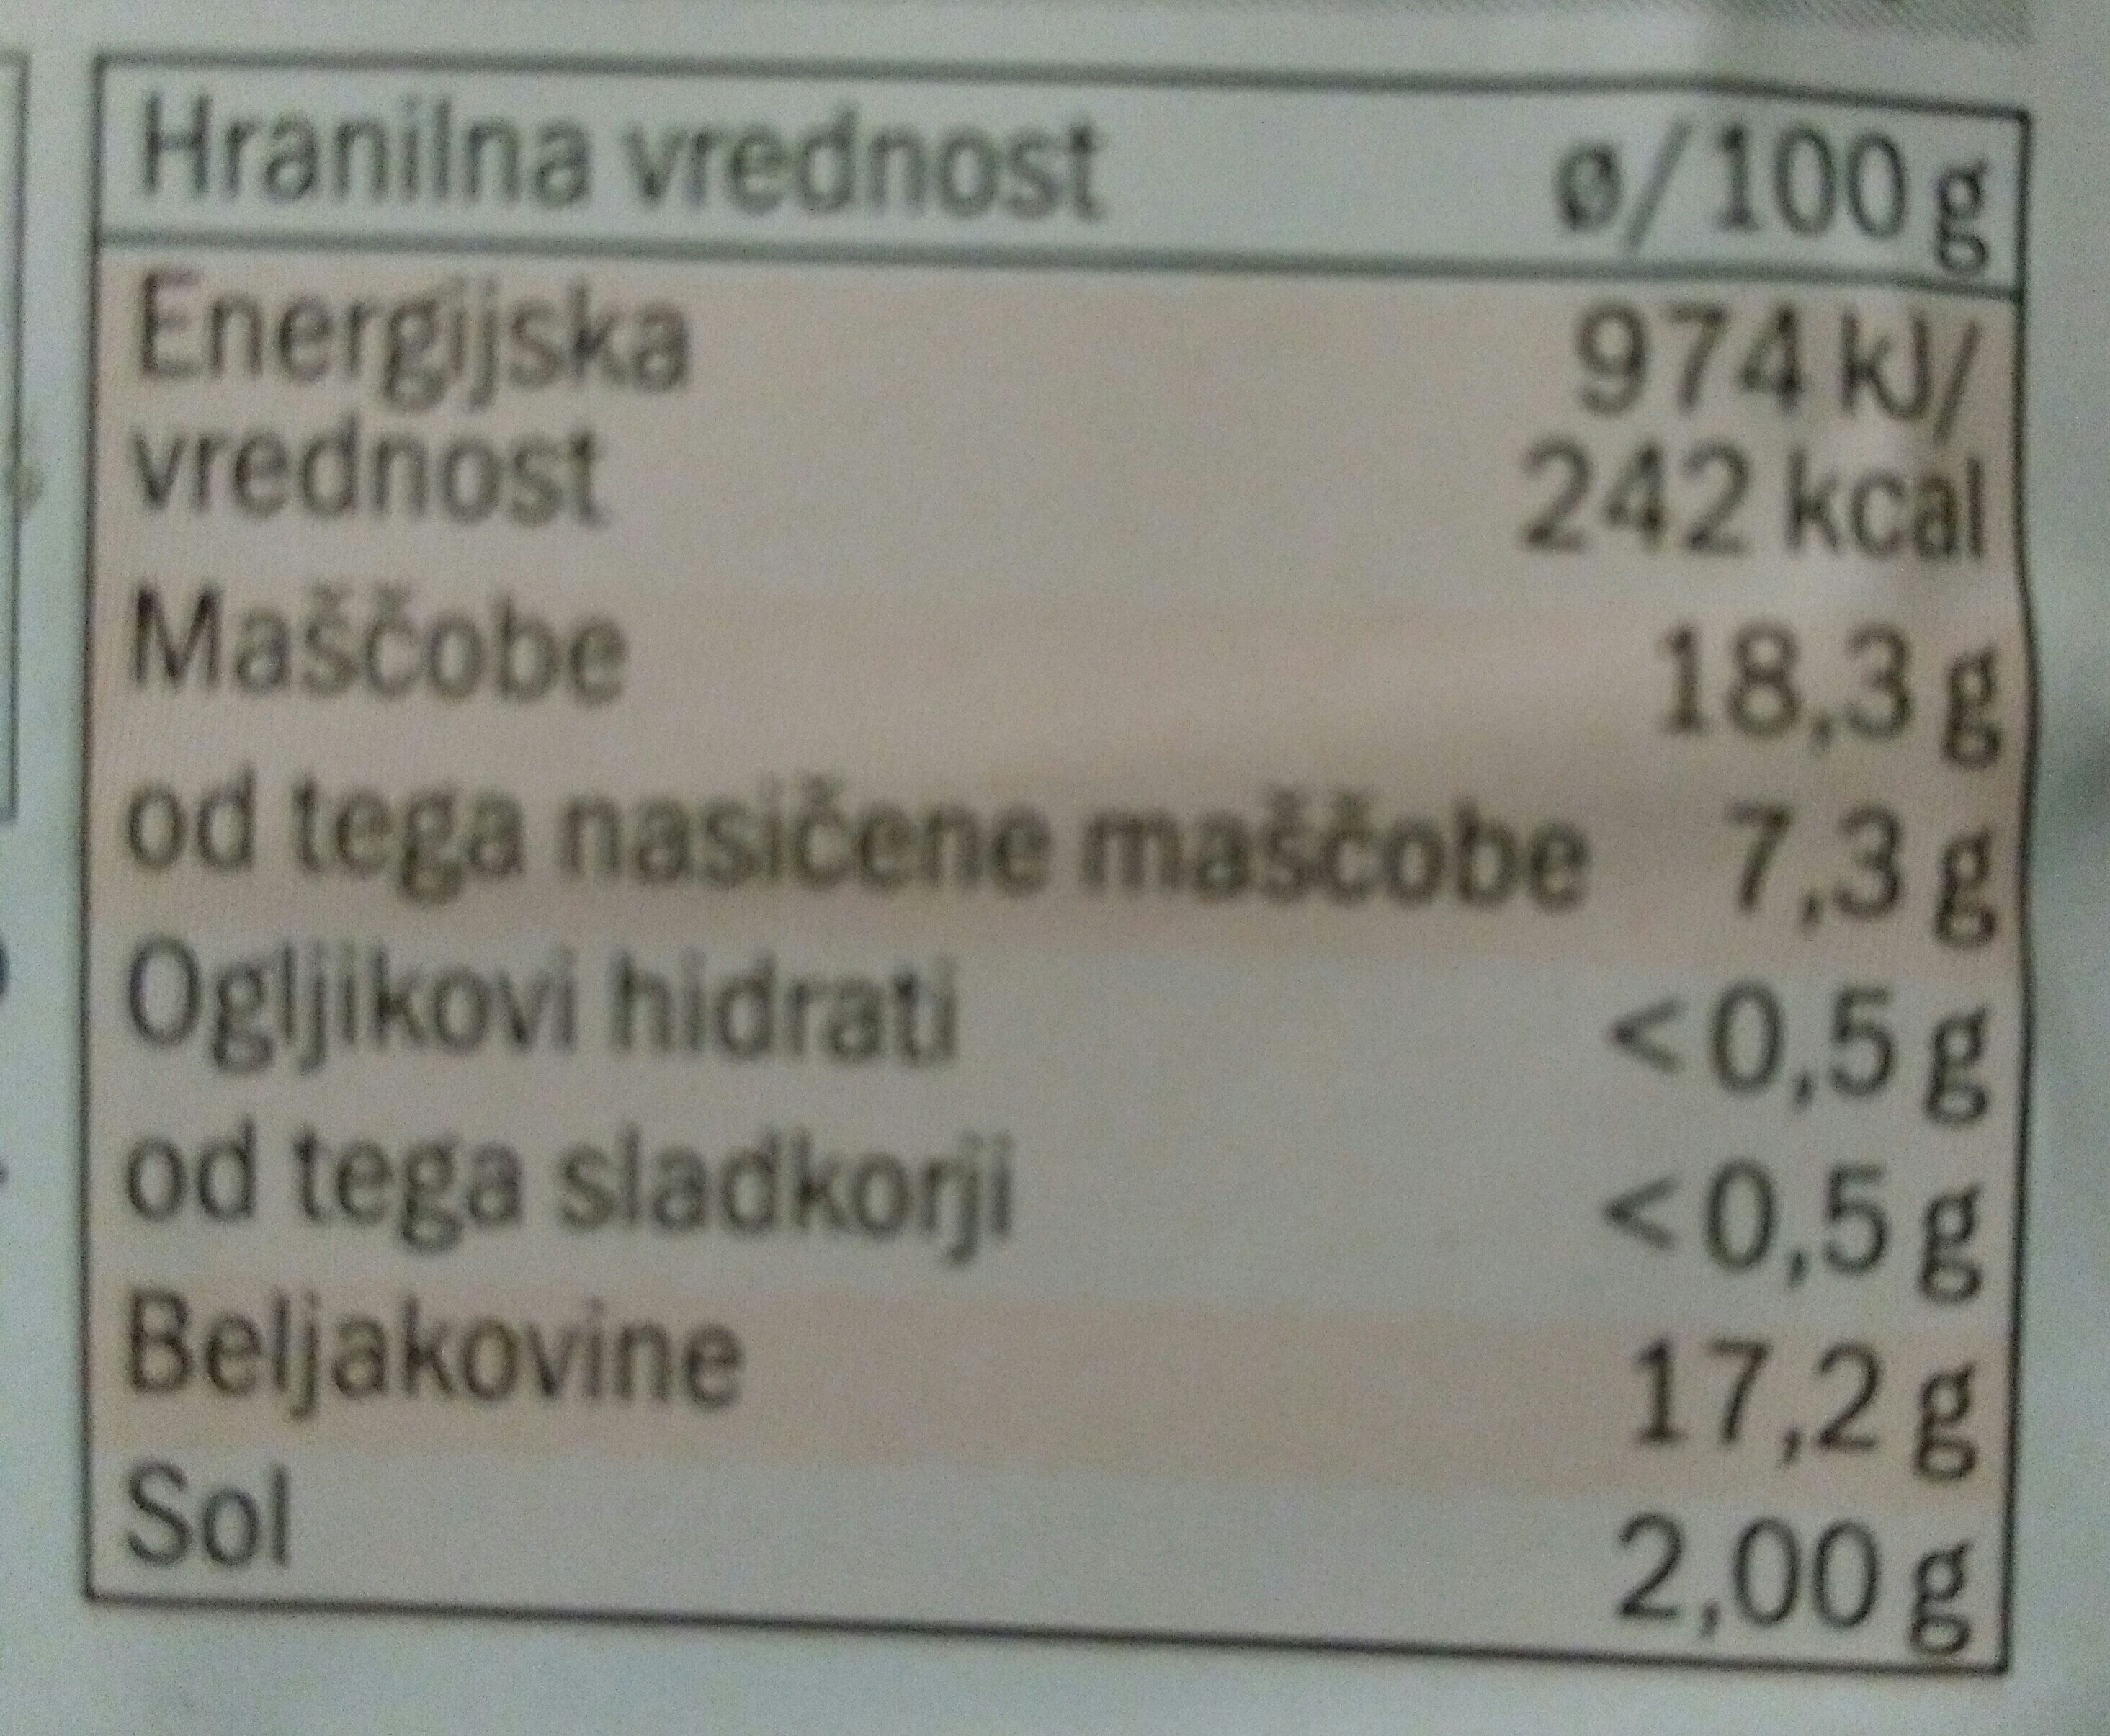 Banjaluški čevapčiči - Nutrition facts - sl